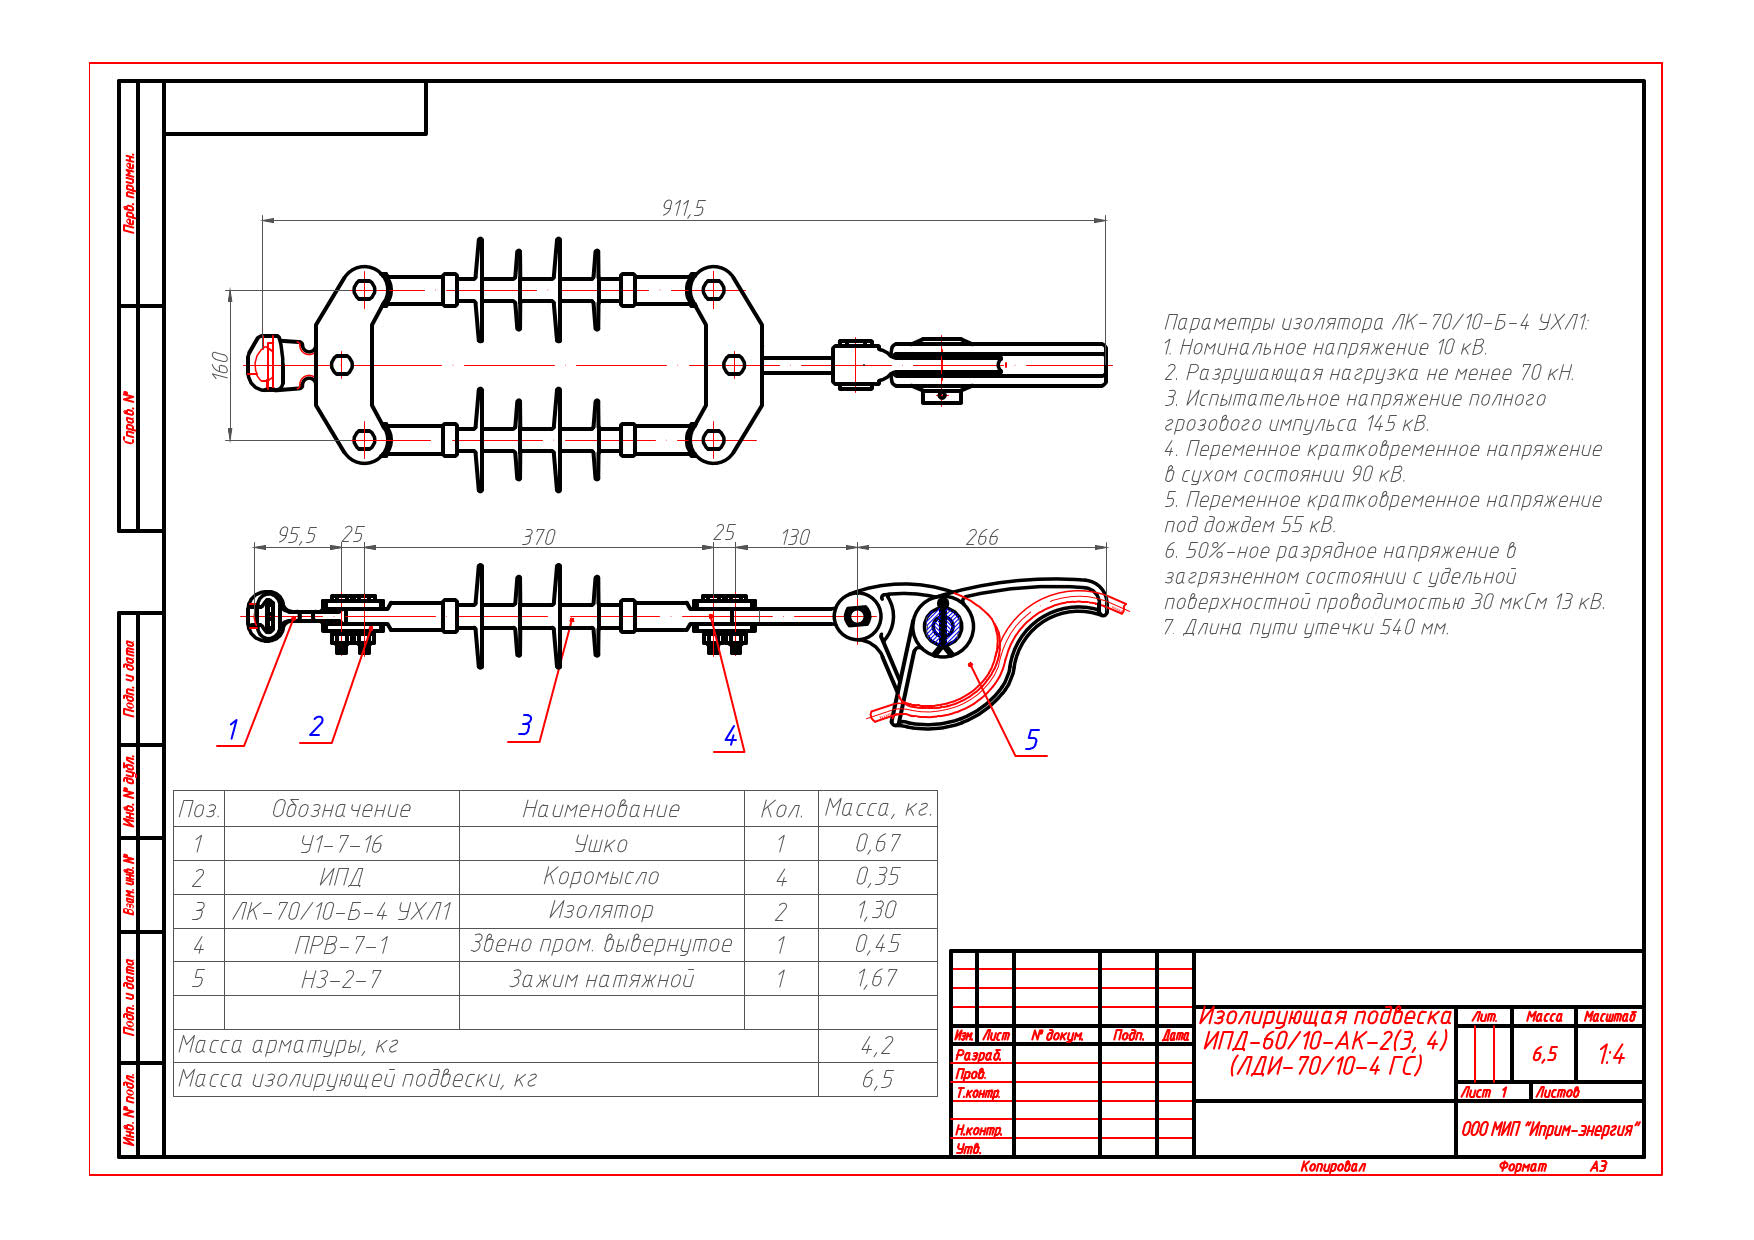 Изолирующая подвеска ИПД-60/10-АК-2(3, 4) (ЛДИ-70/10-4 ГС) чертеж